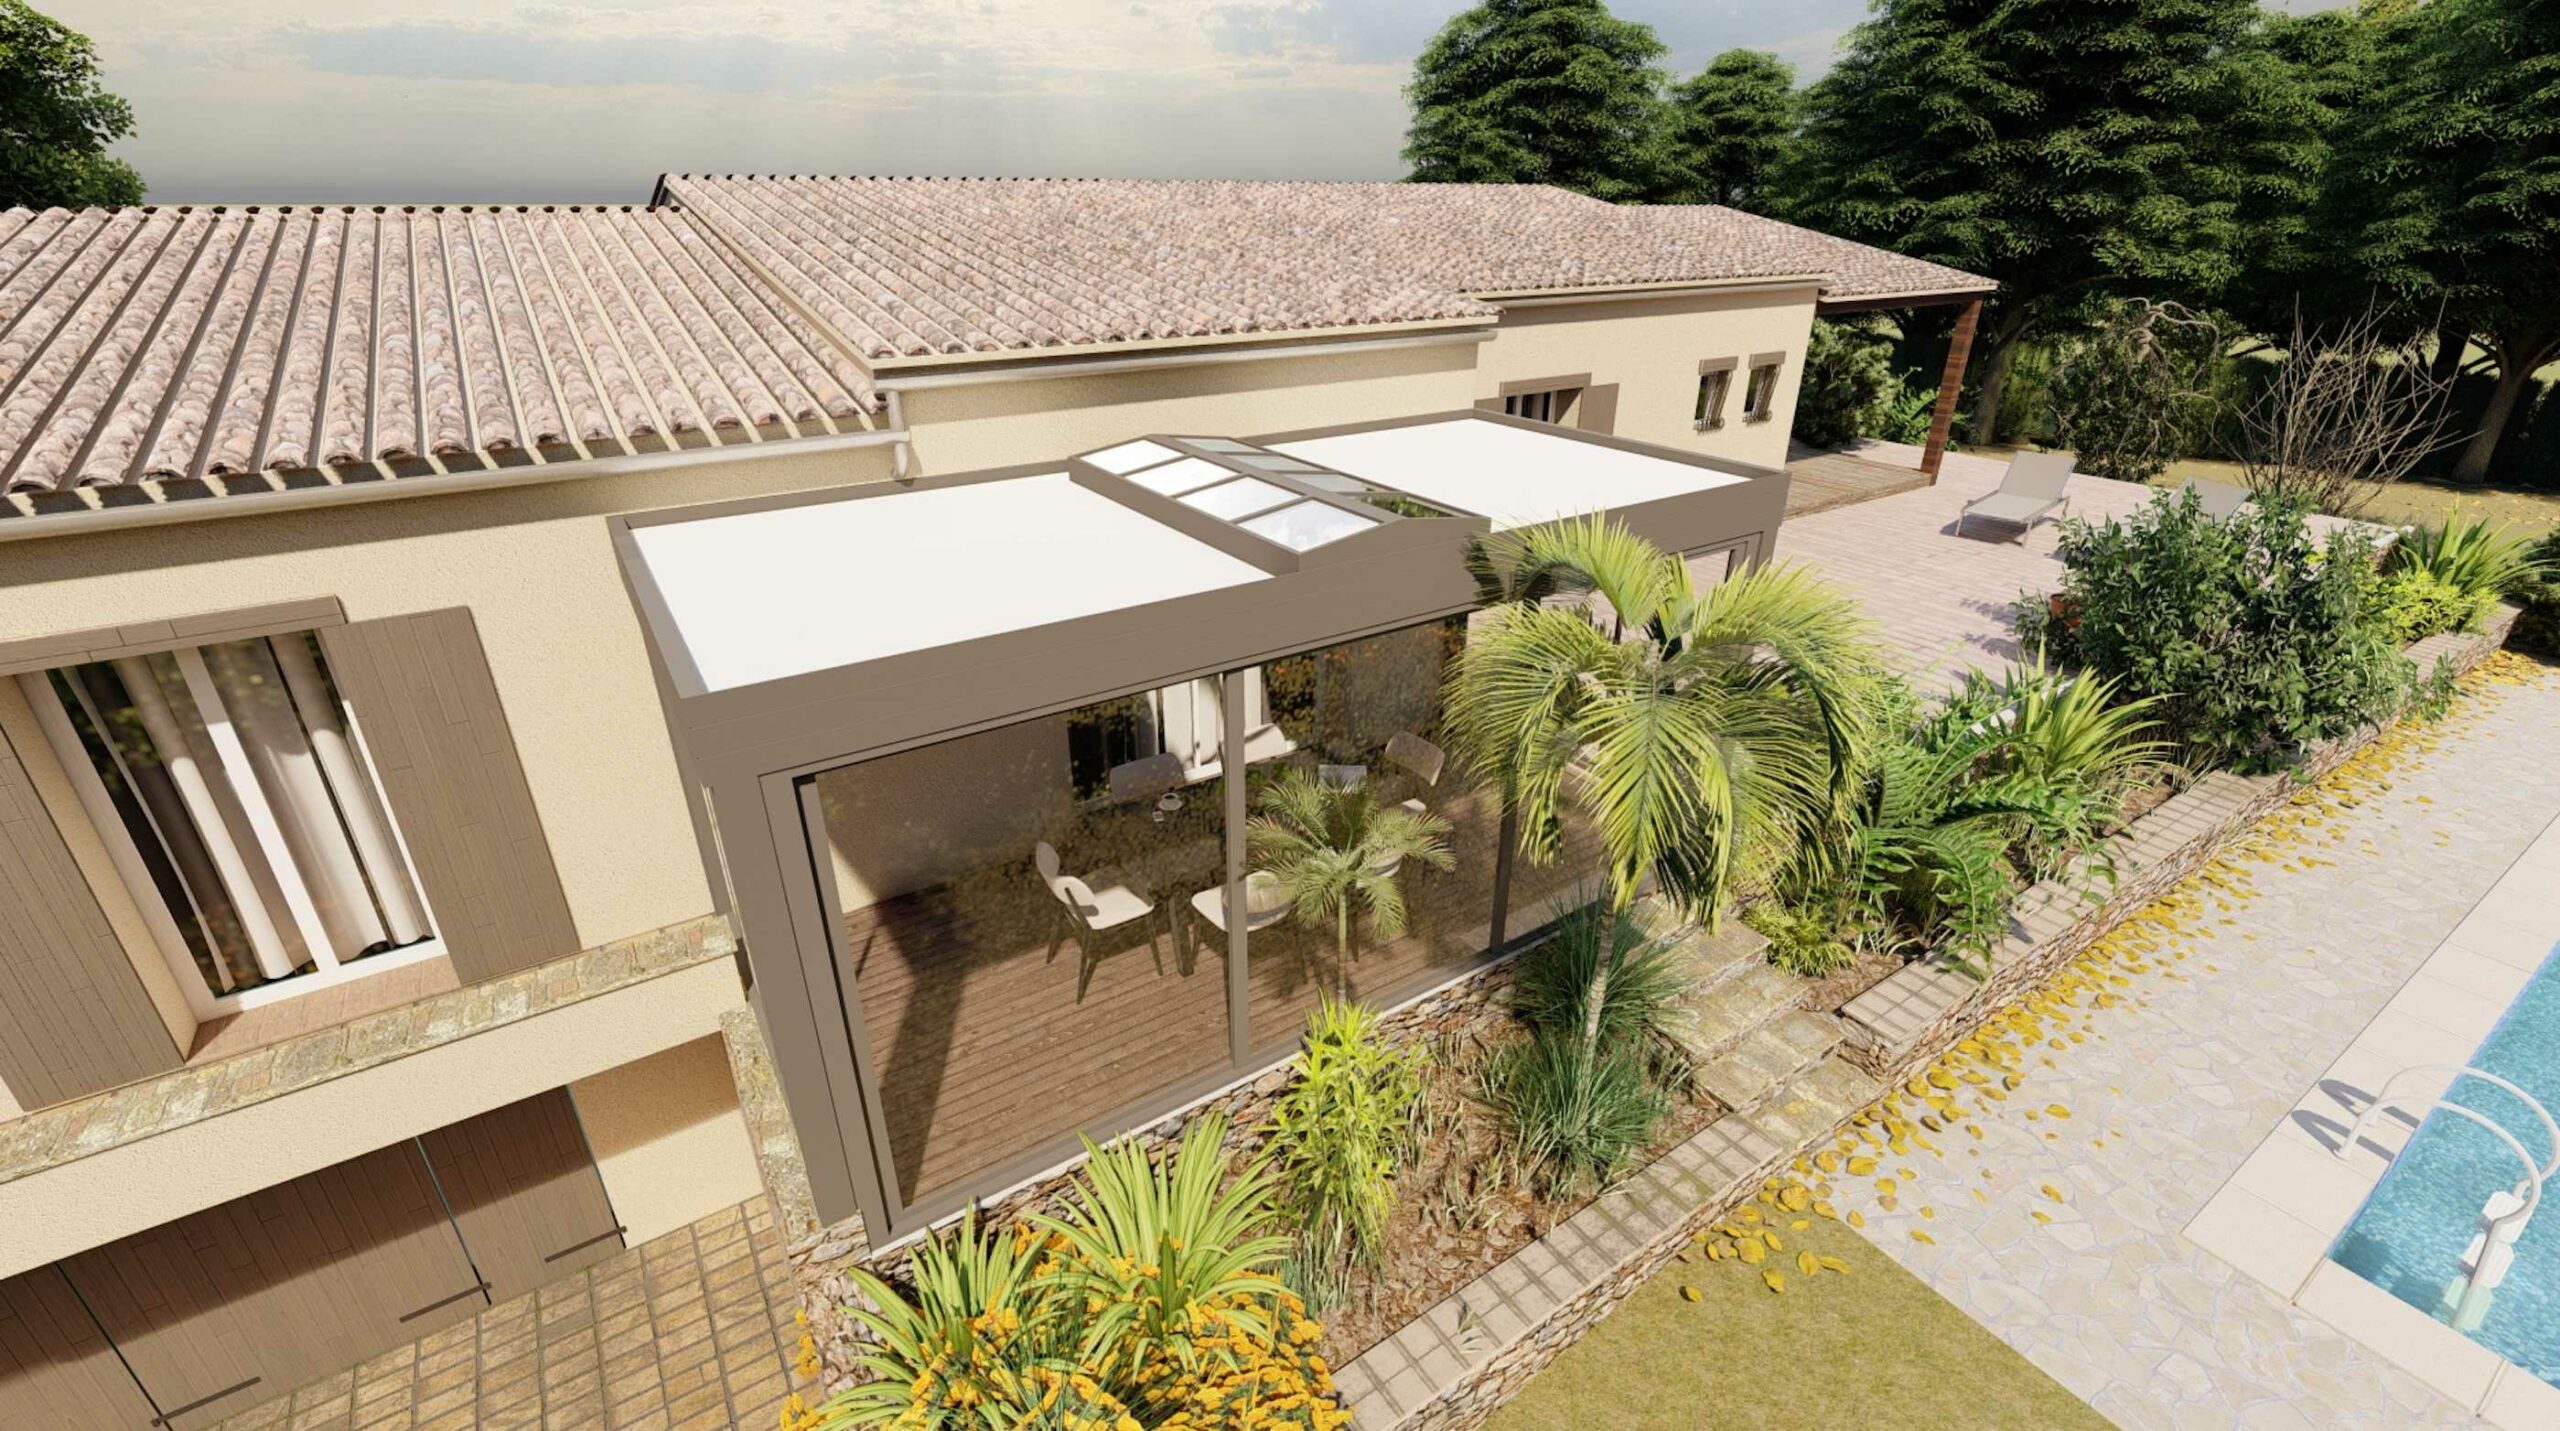 Veranda with skylight from NetCoop, specialist in 3D exterior design.